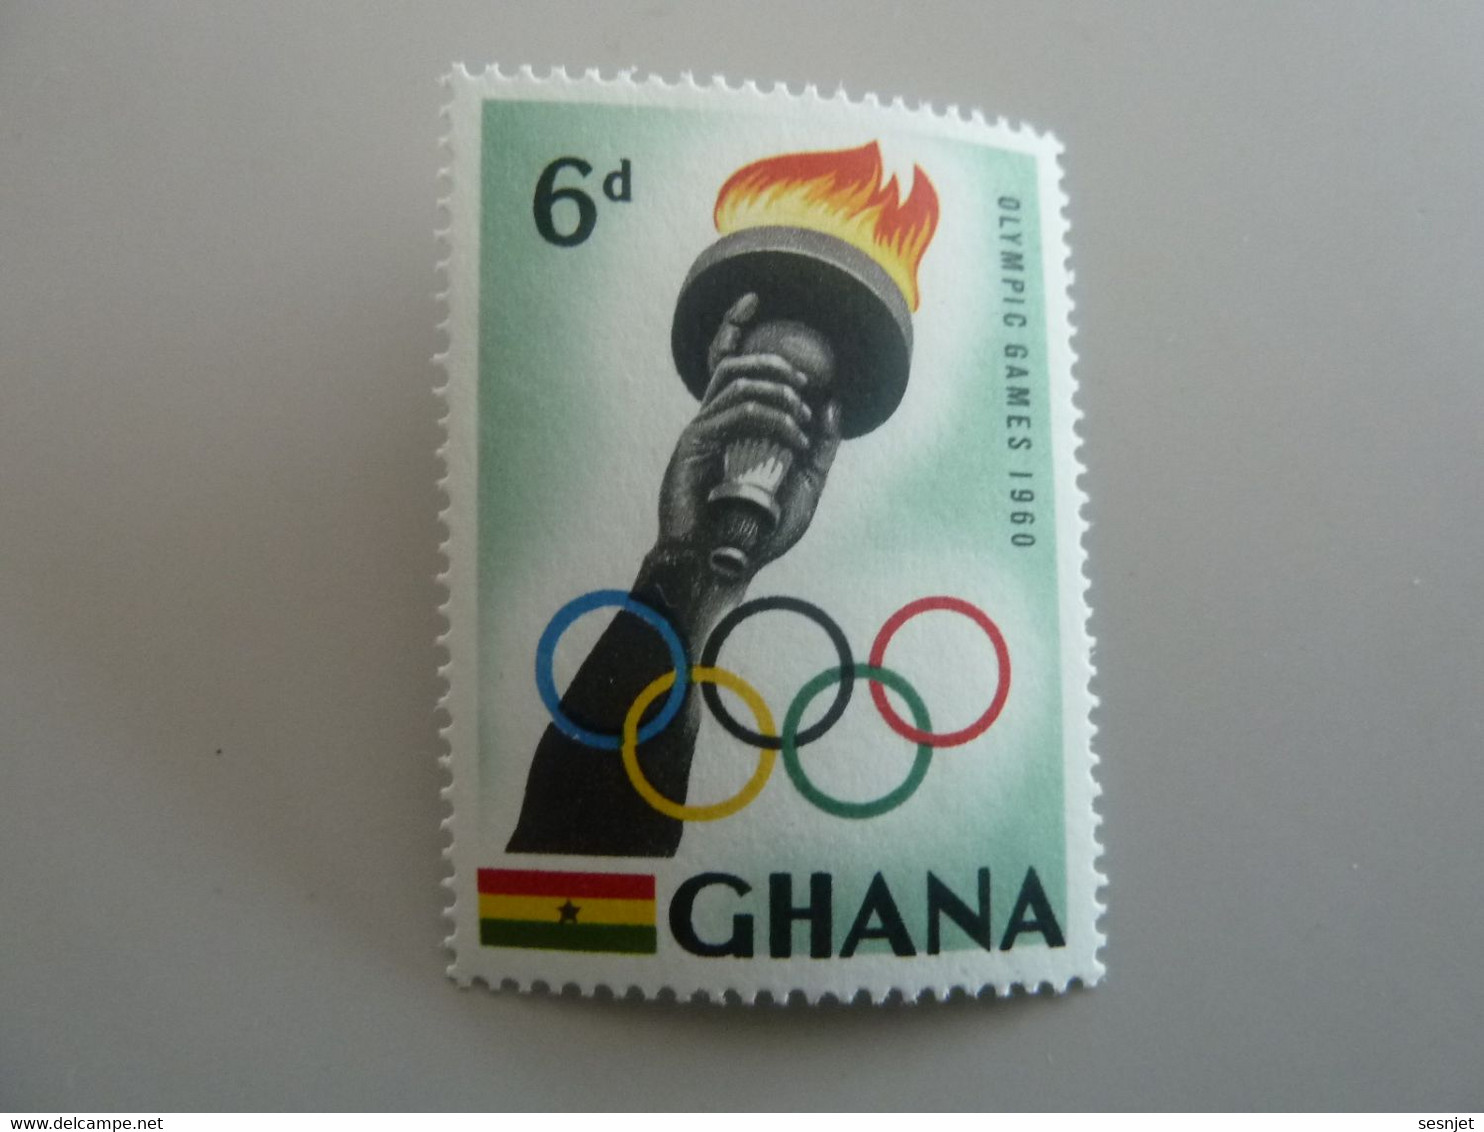 Ghana - Olympic Games 1960 - 6d. - Polychrome - Neuf Sans Charnière - Année 1960 - - Ghana (1957-...)